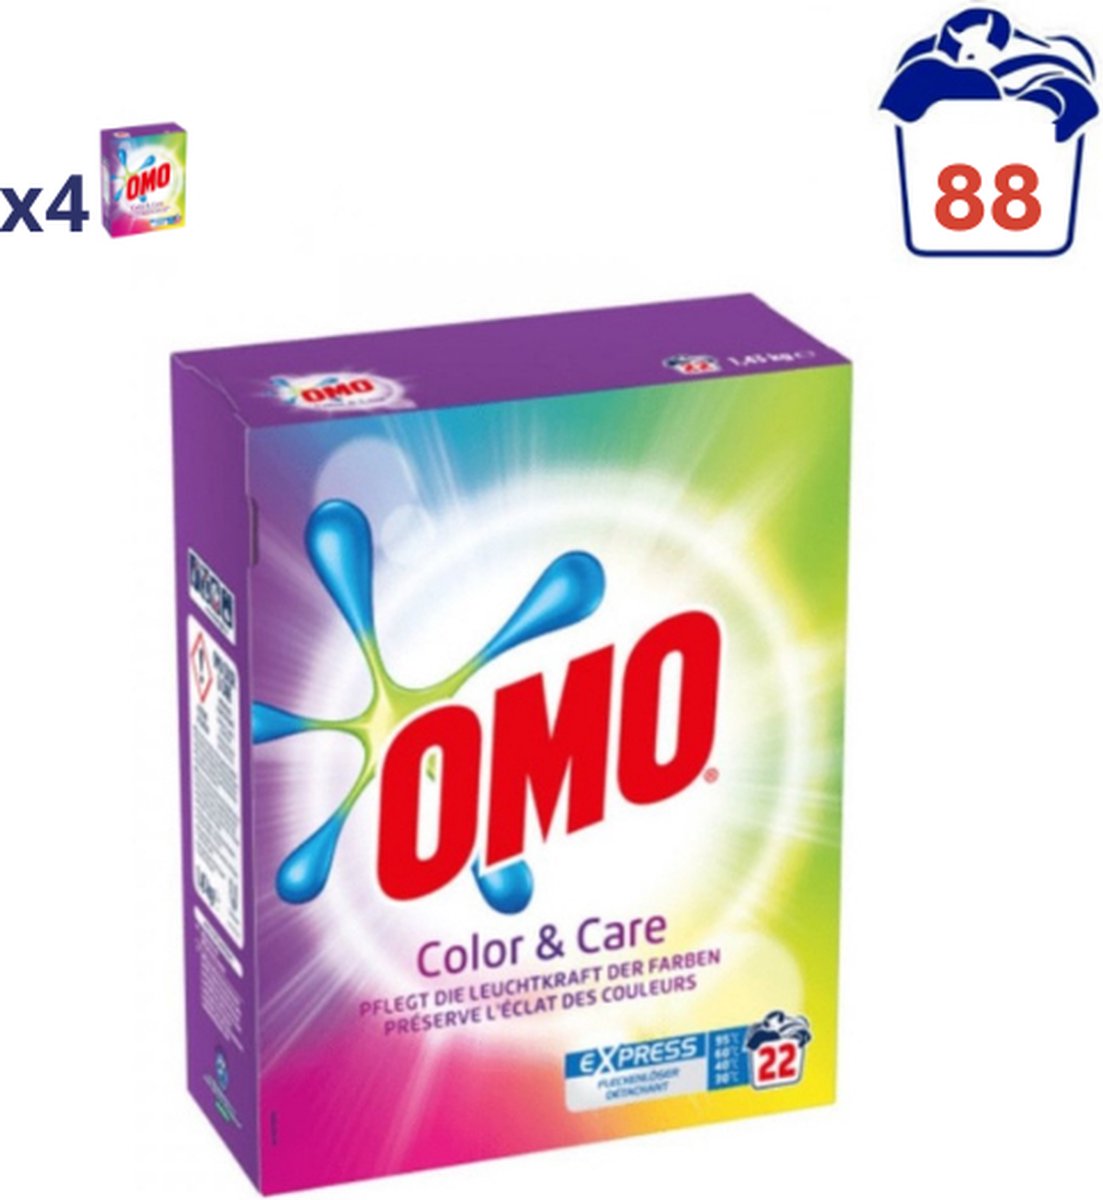 OMO Color & Care Waspoeder - 4 x 1,43 kg (88 wasbeurten)